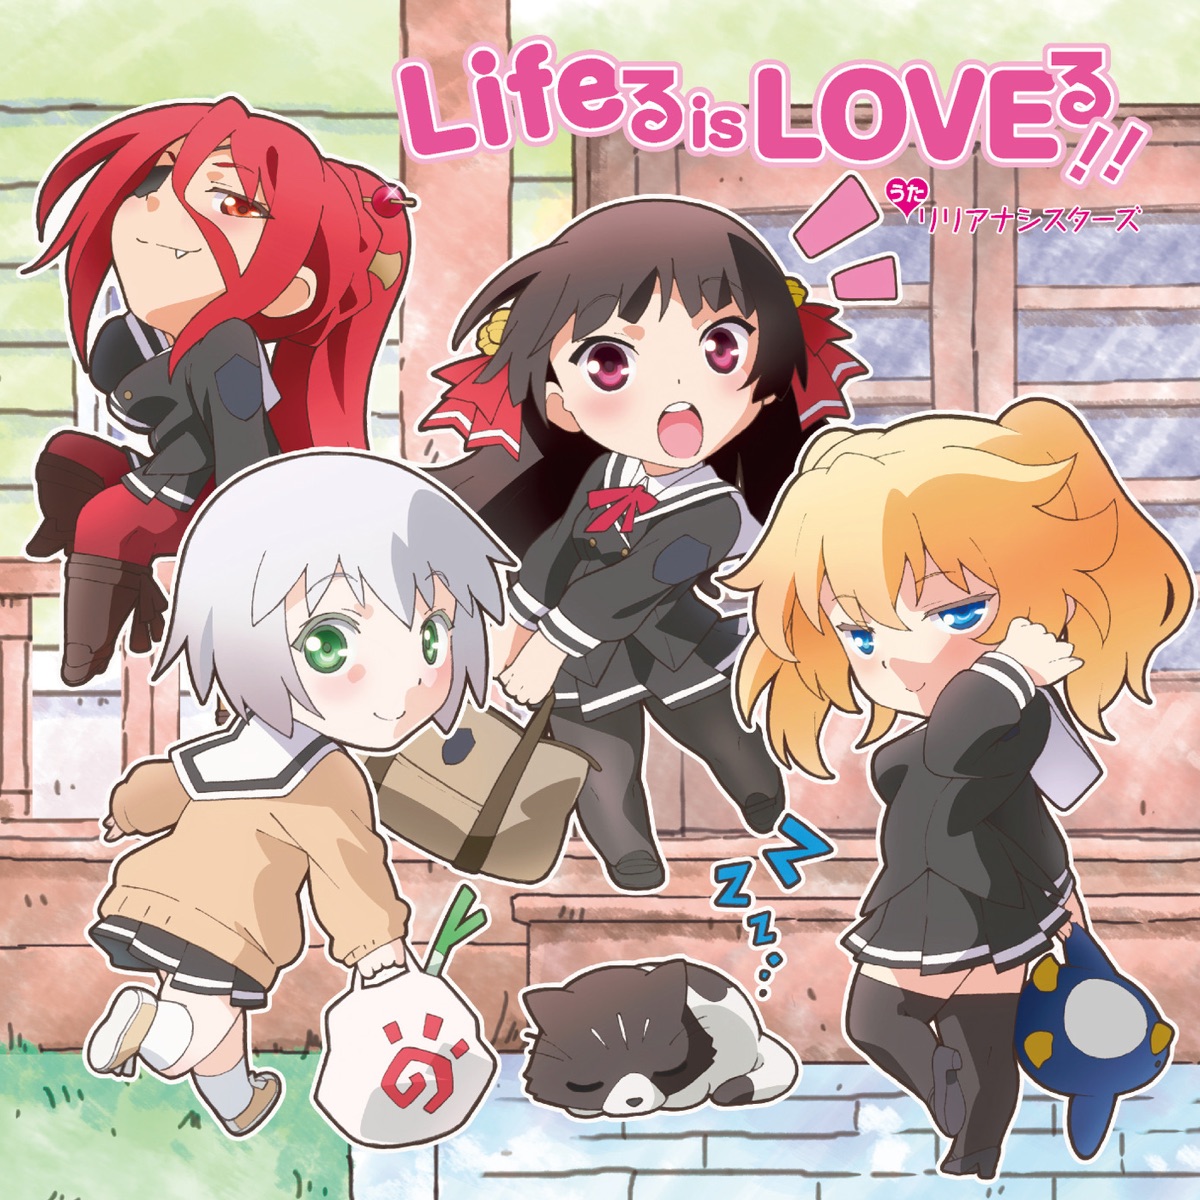 『リリアナシスターズ - Lifeる is LOVEる!! 歌詞』収録の『Lifeる is LOVEる!!』ジャケット